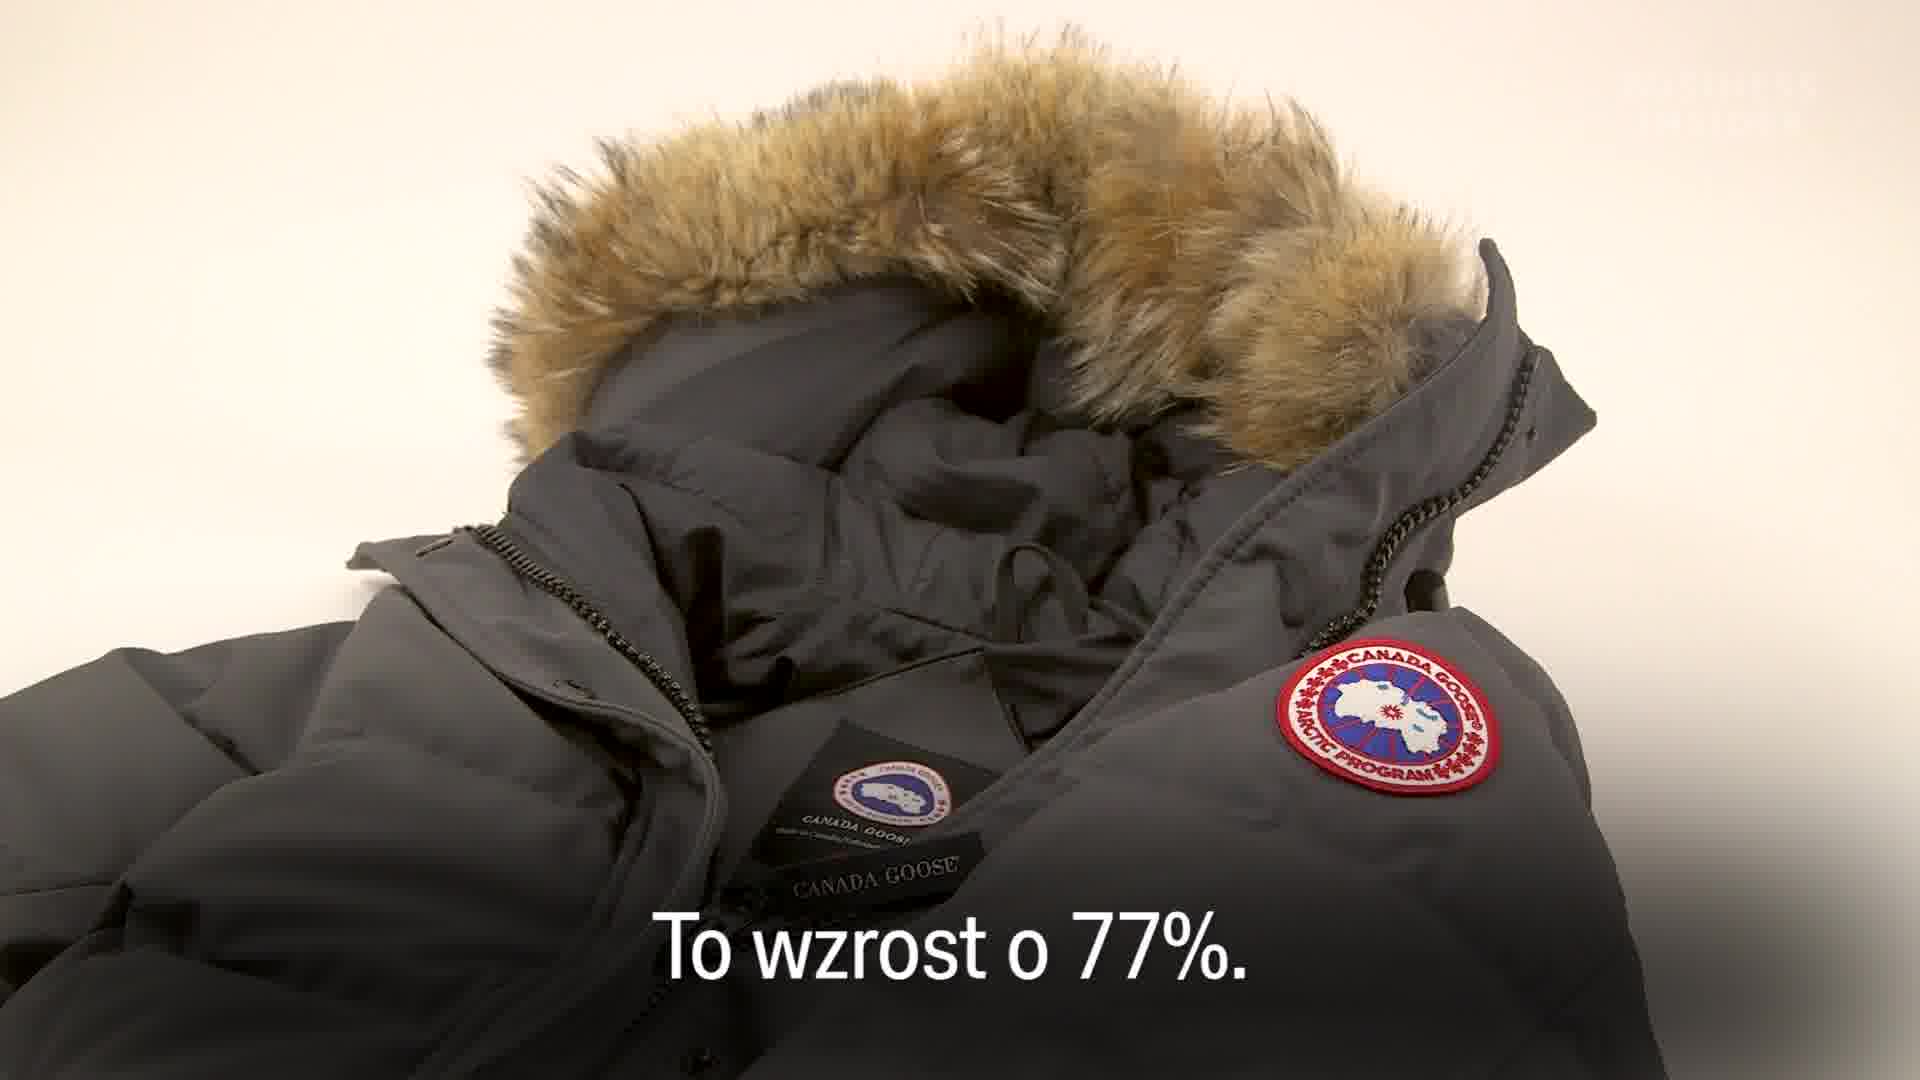 Canada Goose - dlaczego te kurtki są takie drogie